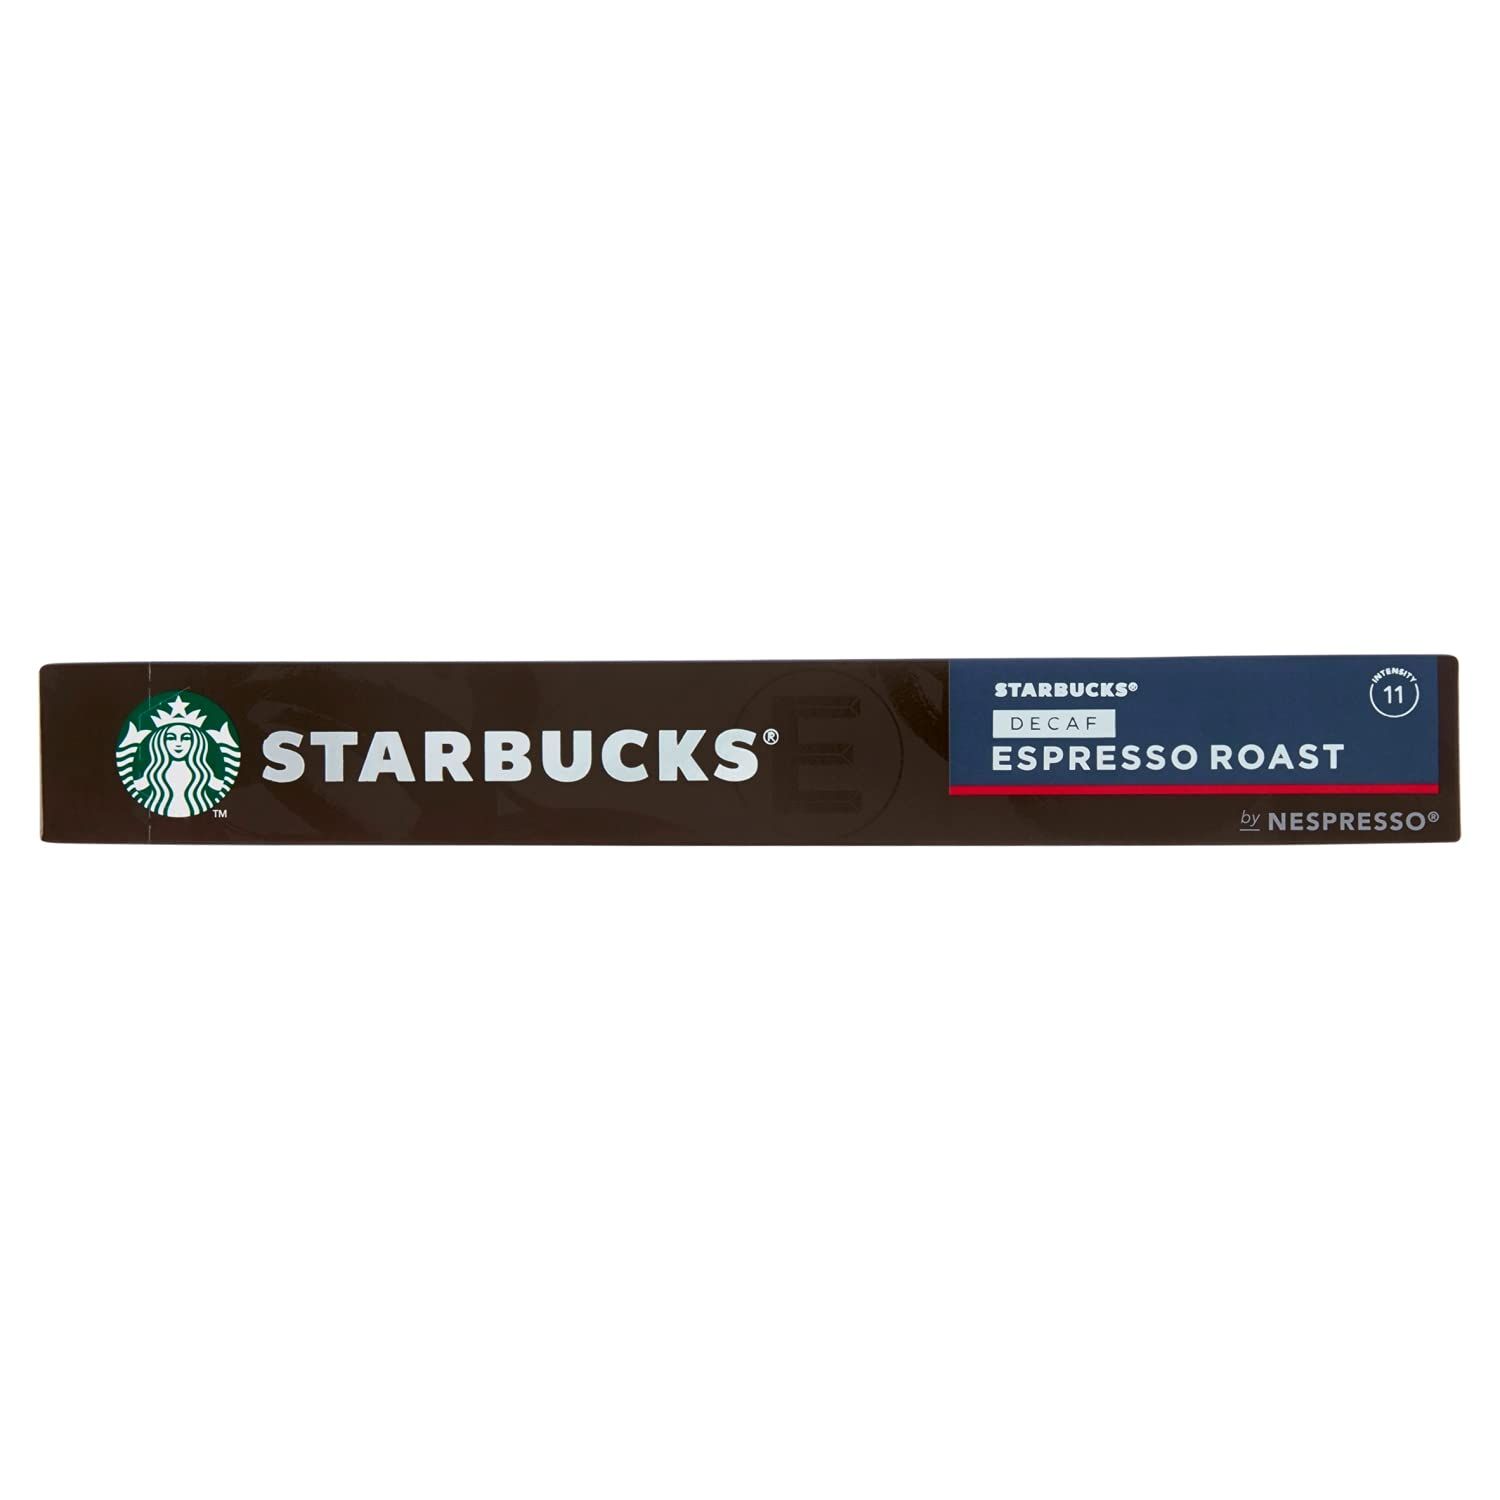 Starbuck's Decaf Espresso Roast Nespresso Coffee Image